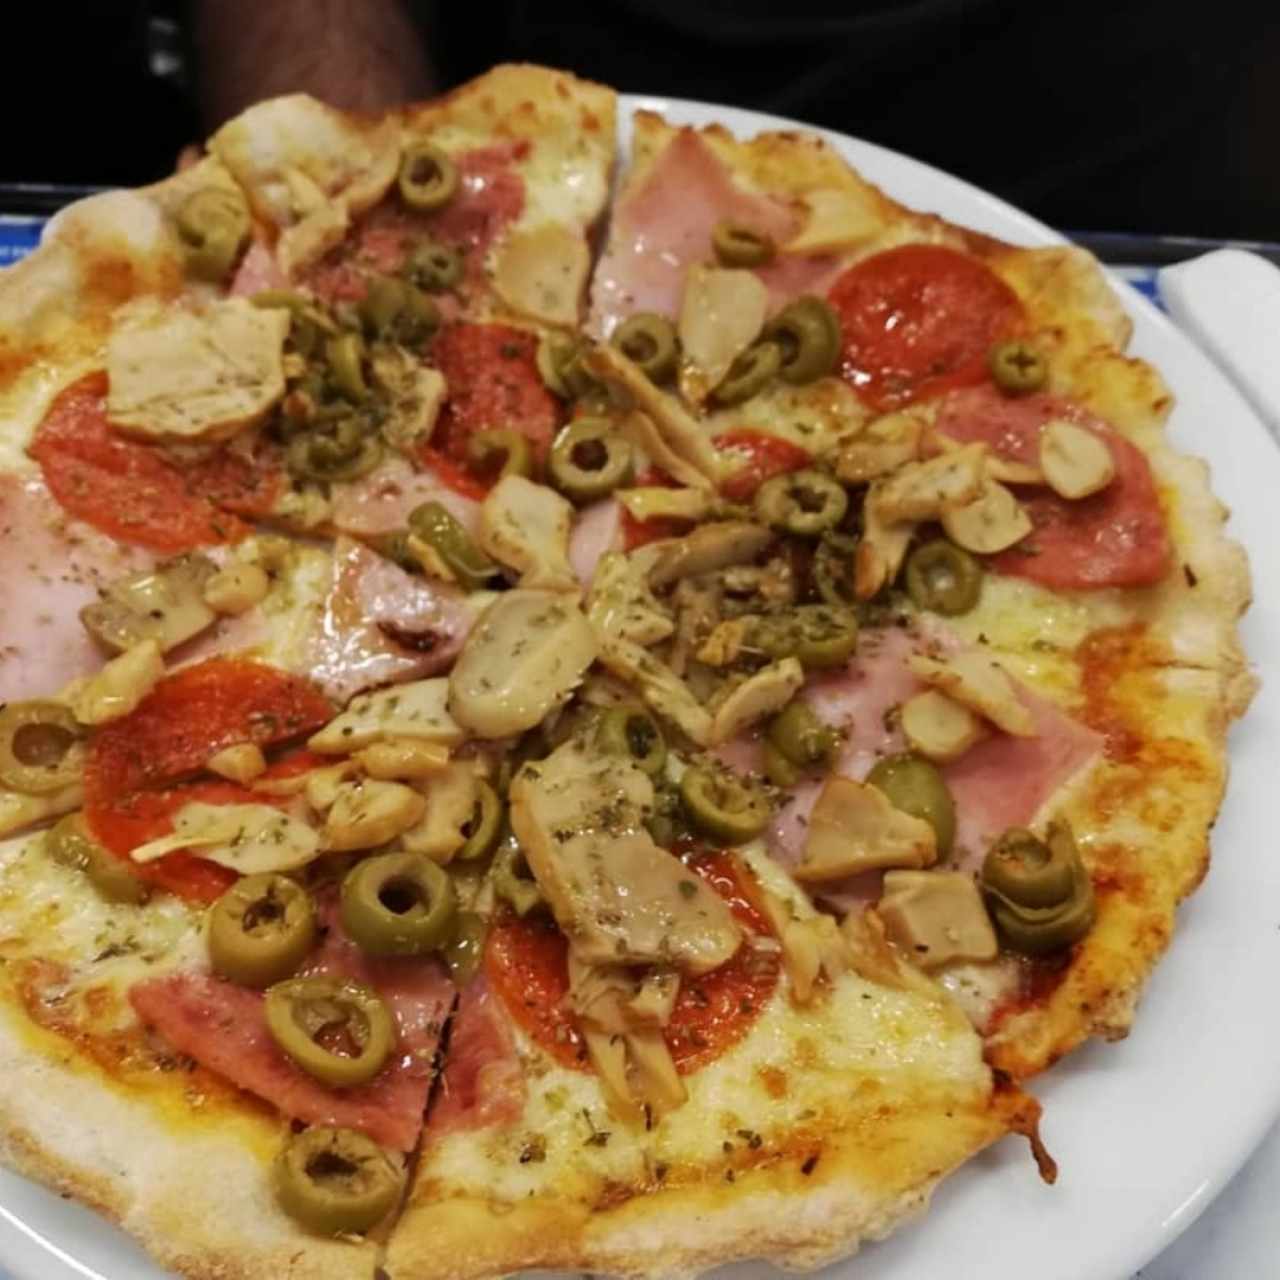 Pizza combinación